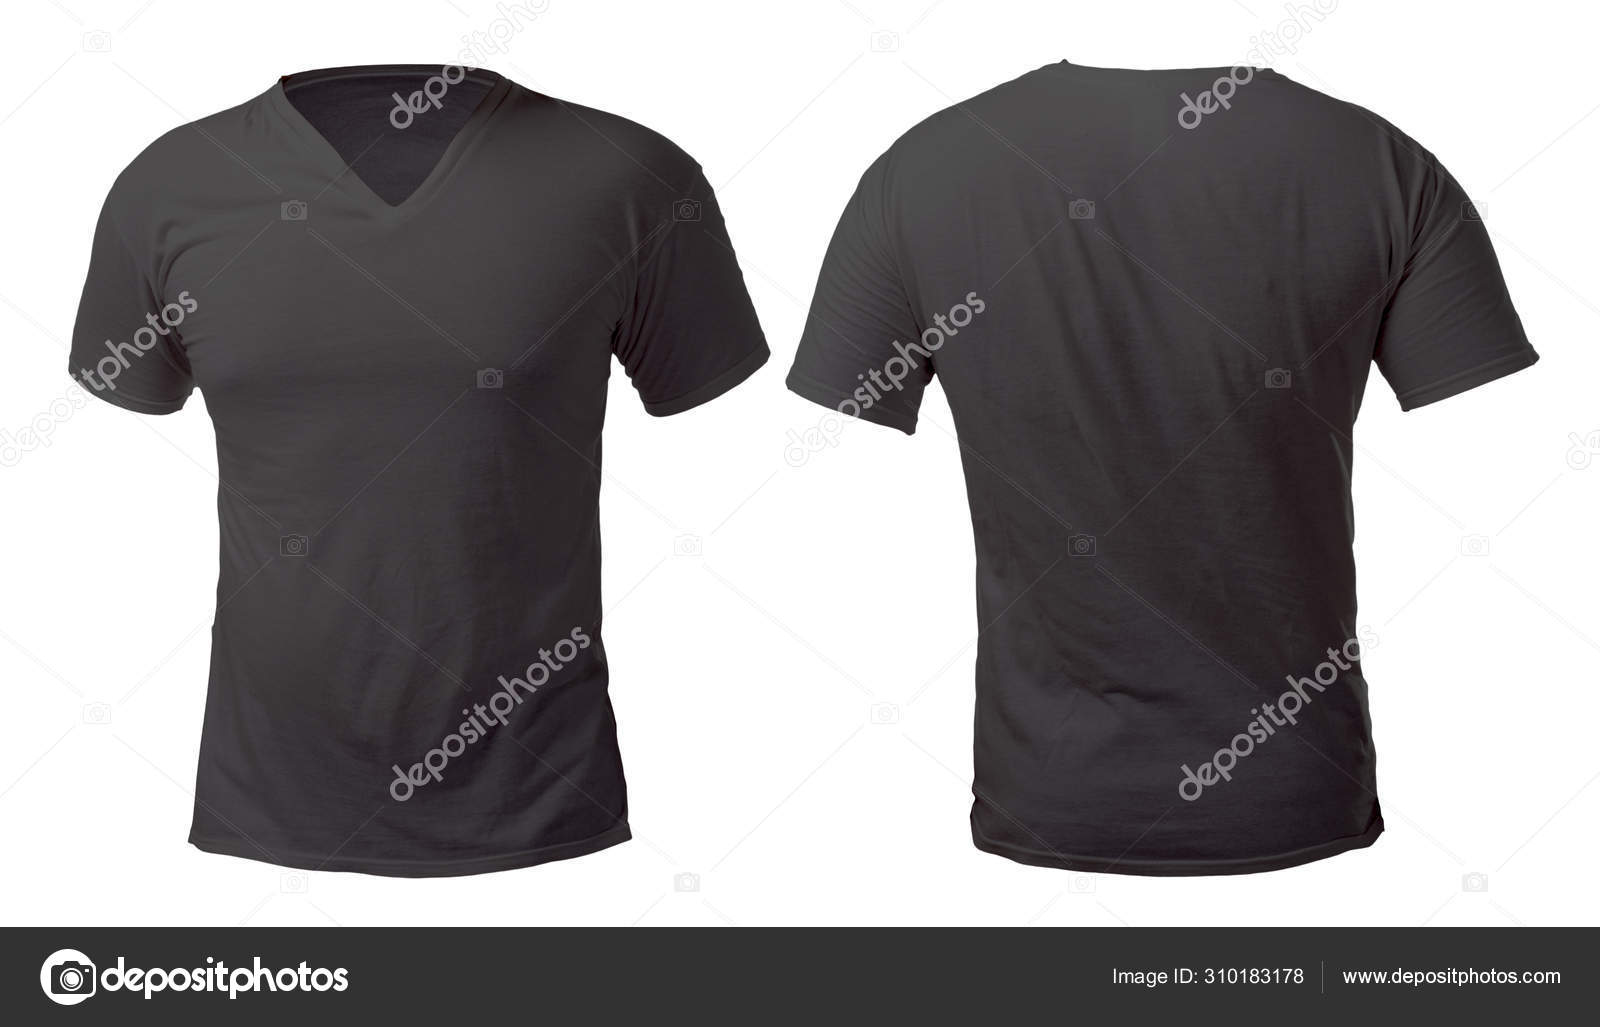 plain black t shirt front and back v neck